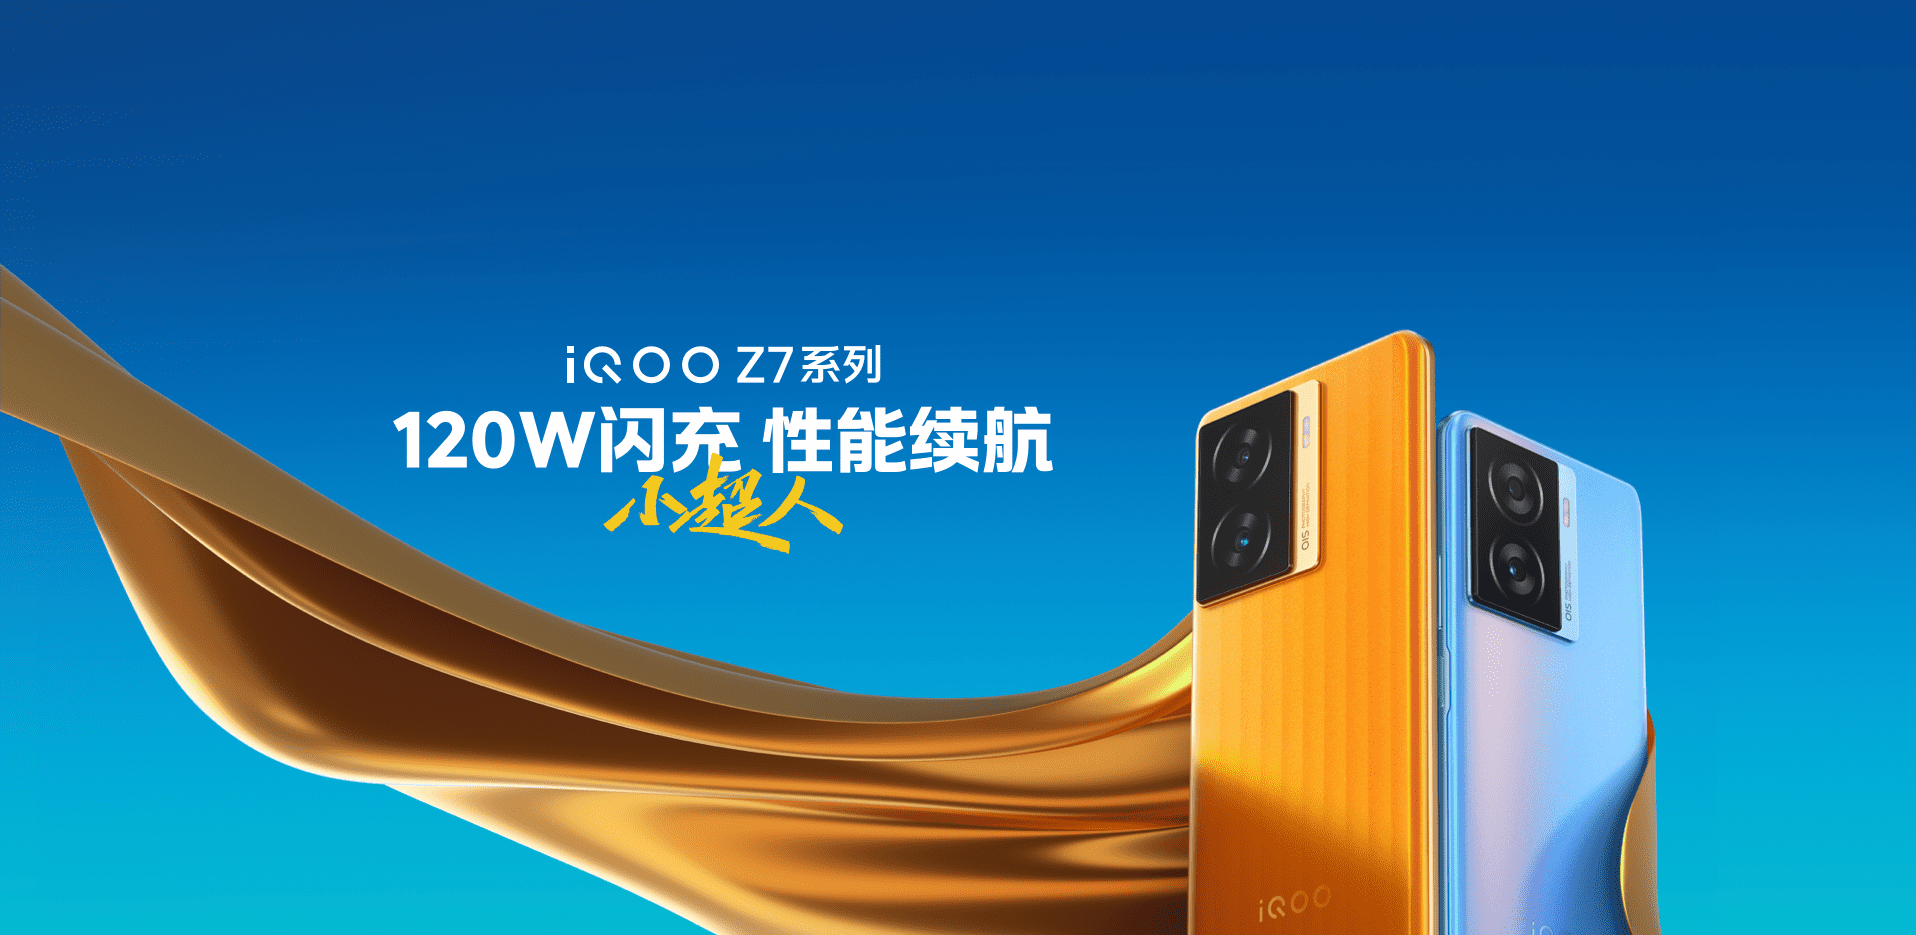 iqoo z7系列新品上市